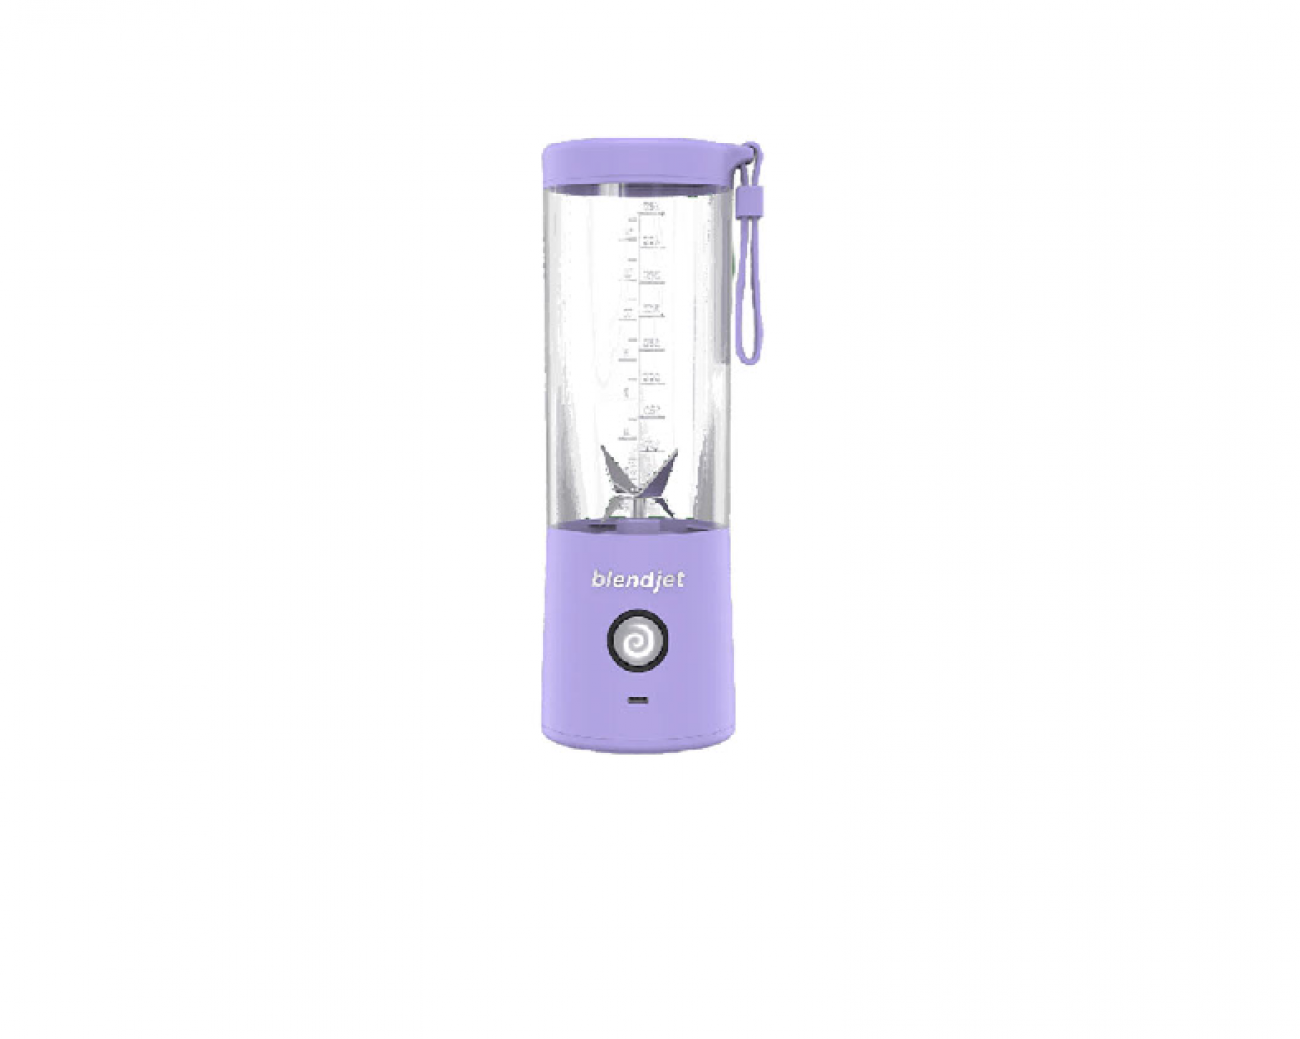 BlendJet 2 0.45L Portable Personal Blender- Options Colours: Lavender, Royal Blue, Carbon Fibre, Mint, Black, Geode